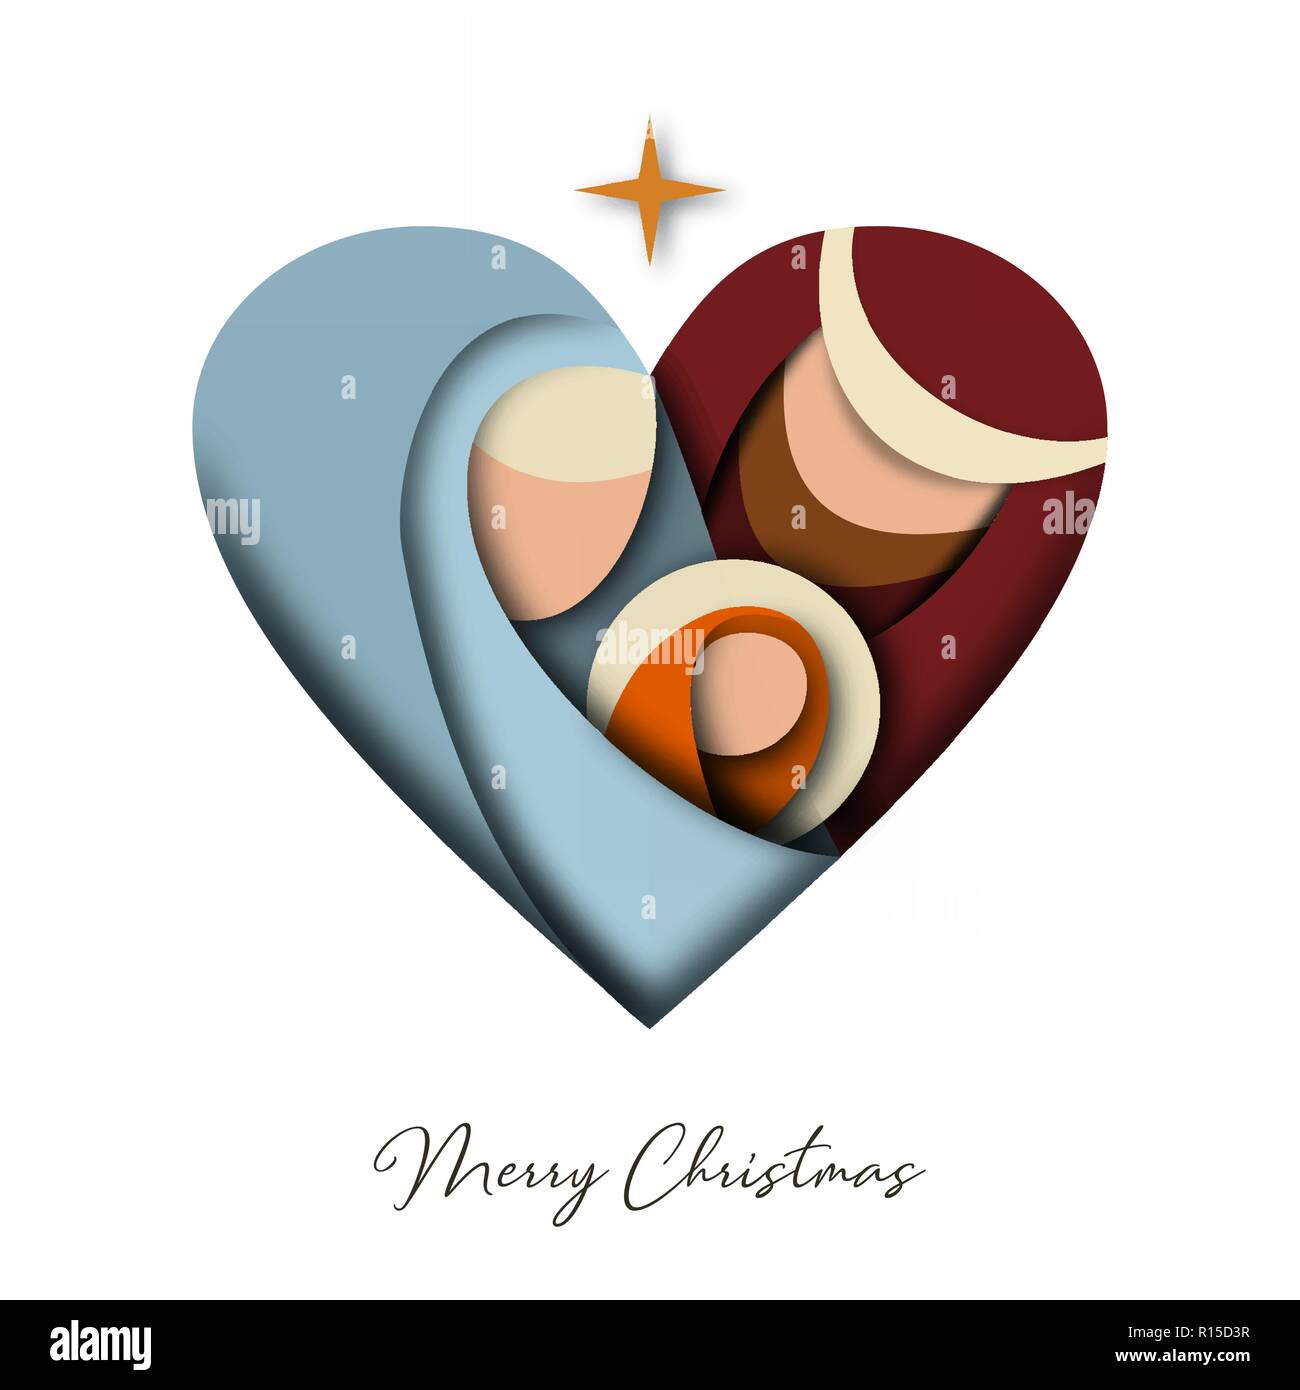 Frohe Weihnachten 3d Papier schneiden Grußkarte mit religiösen Darstellung der Heiligen Familie: Maria, Josef und Jesus Christus. Urlaub Design für festliche Stock Vektor